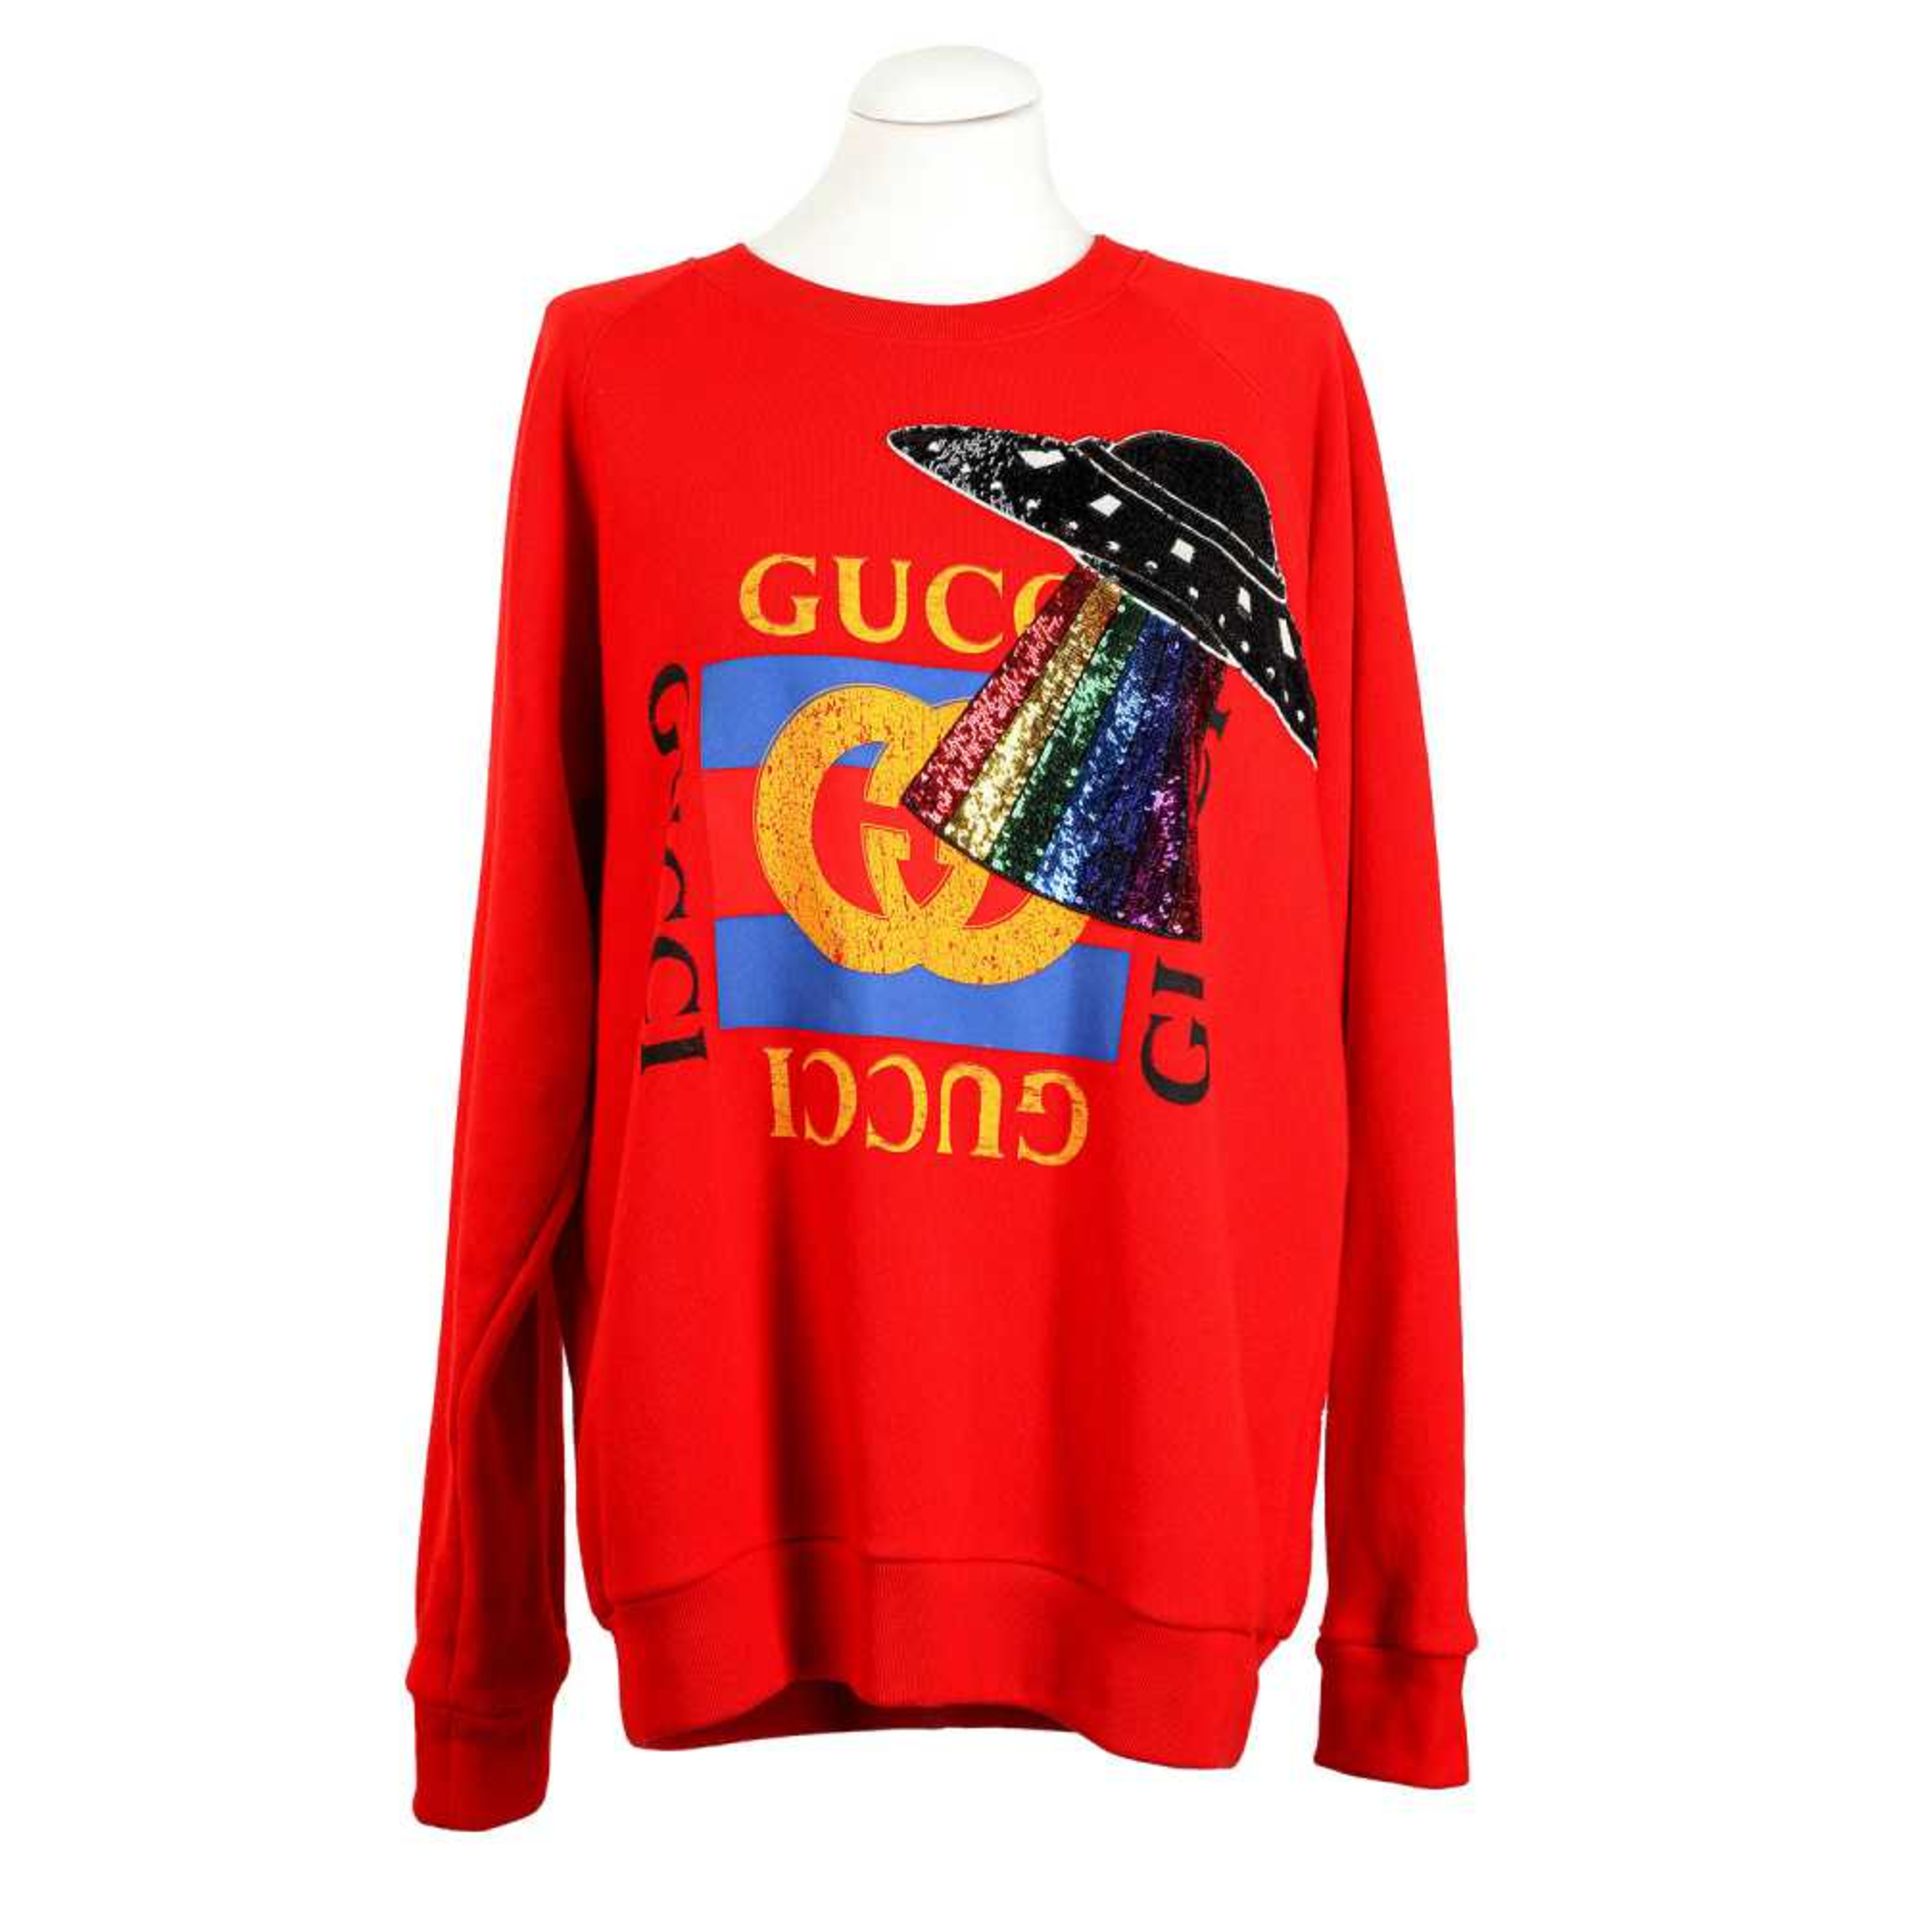 GUCCI Pullover, Gr. M. NP.: 890,-€.100% Baumwolle in Rot, Vorderseite mit mittigem Gucci-Logo und